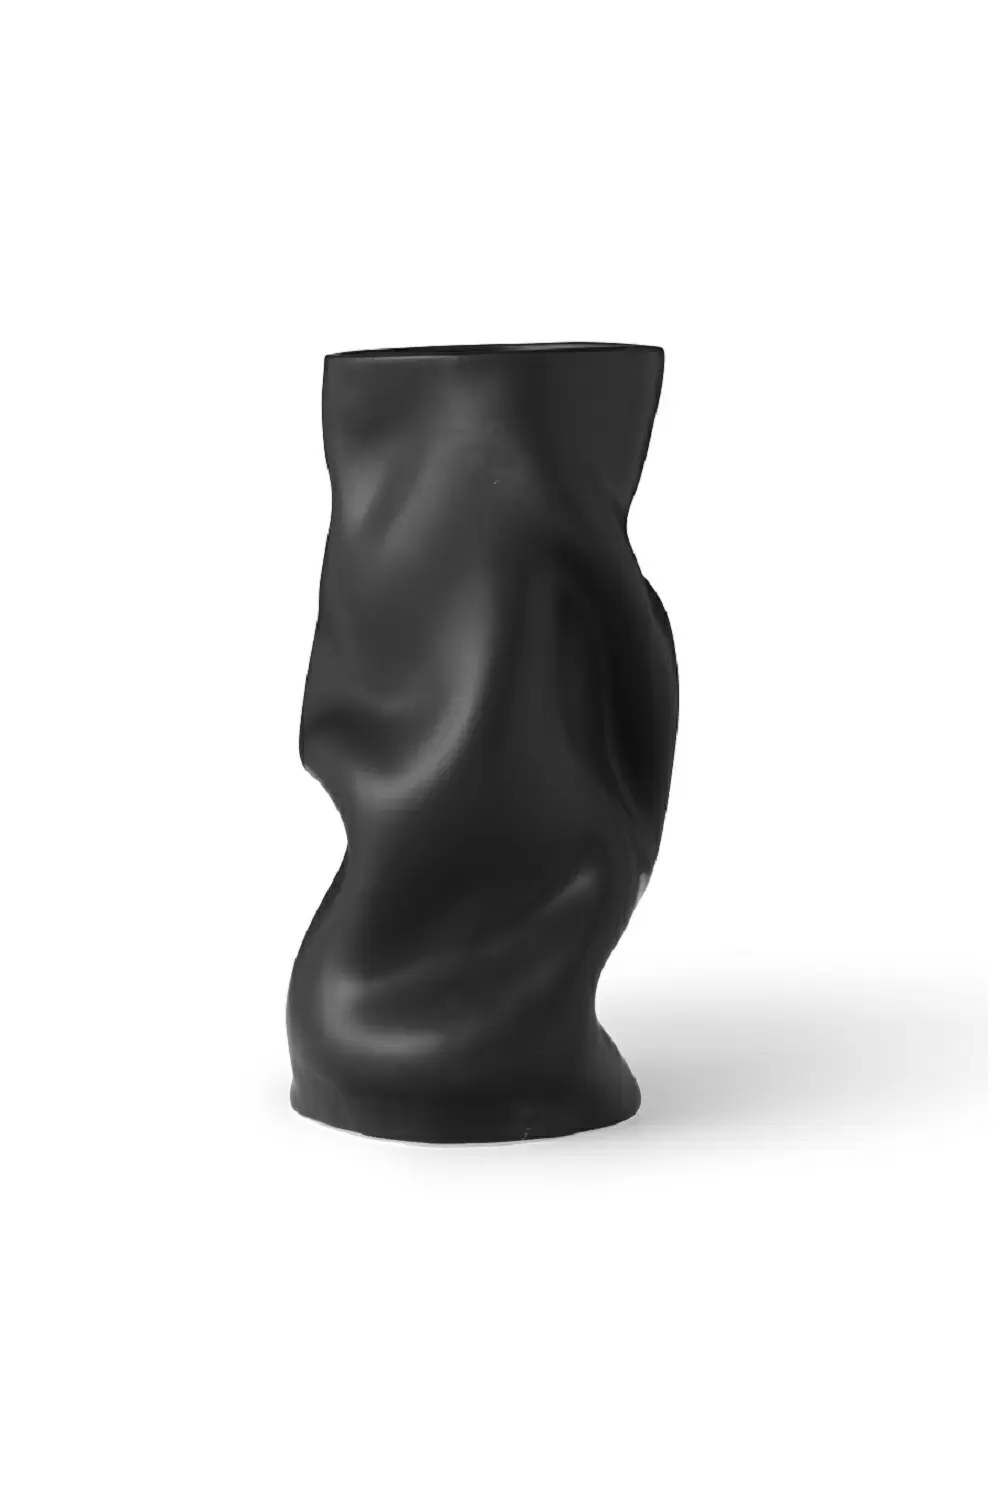 Ваза Collapse Vase h30 Black